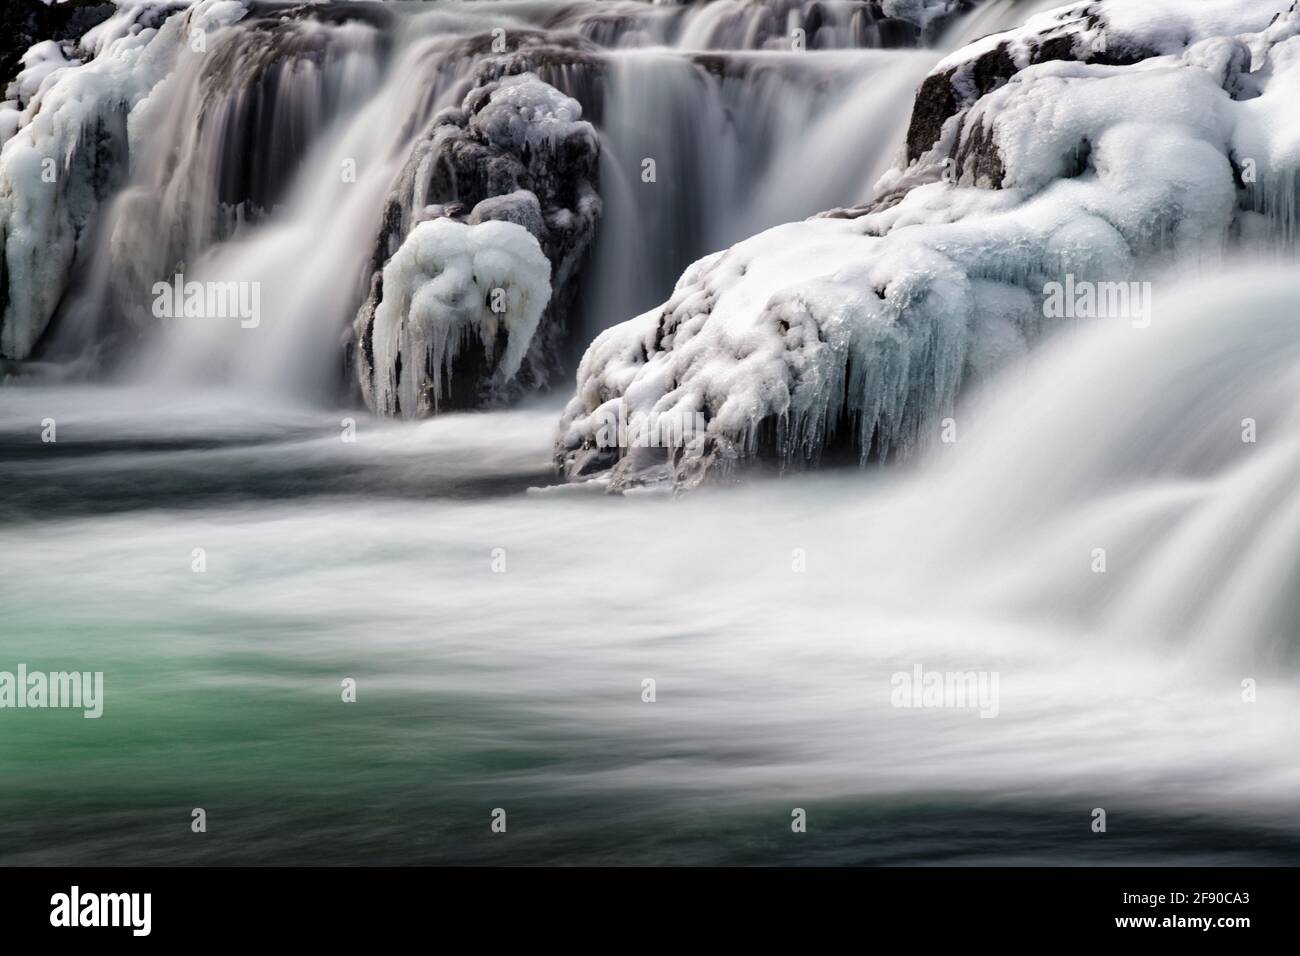 Photo de paysage à longue exposition avec chute d'eau gelée, Islande Banque D'Images